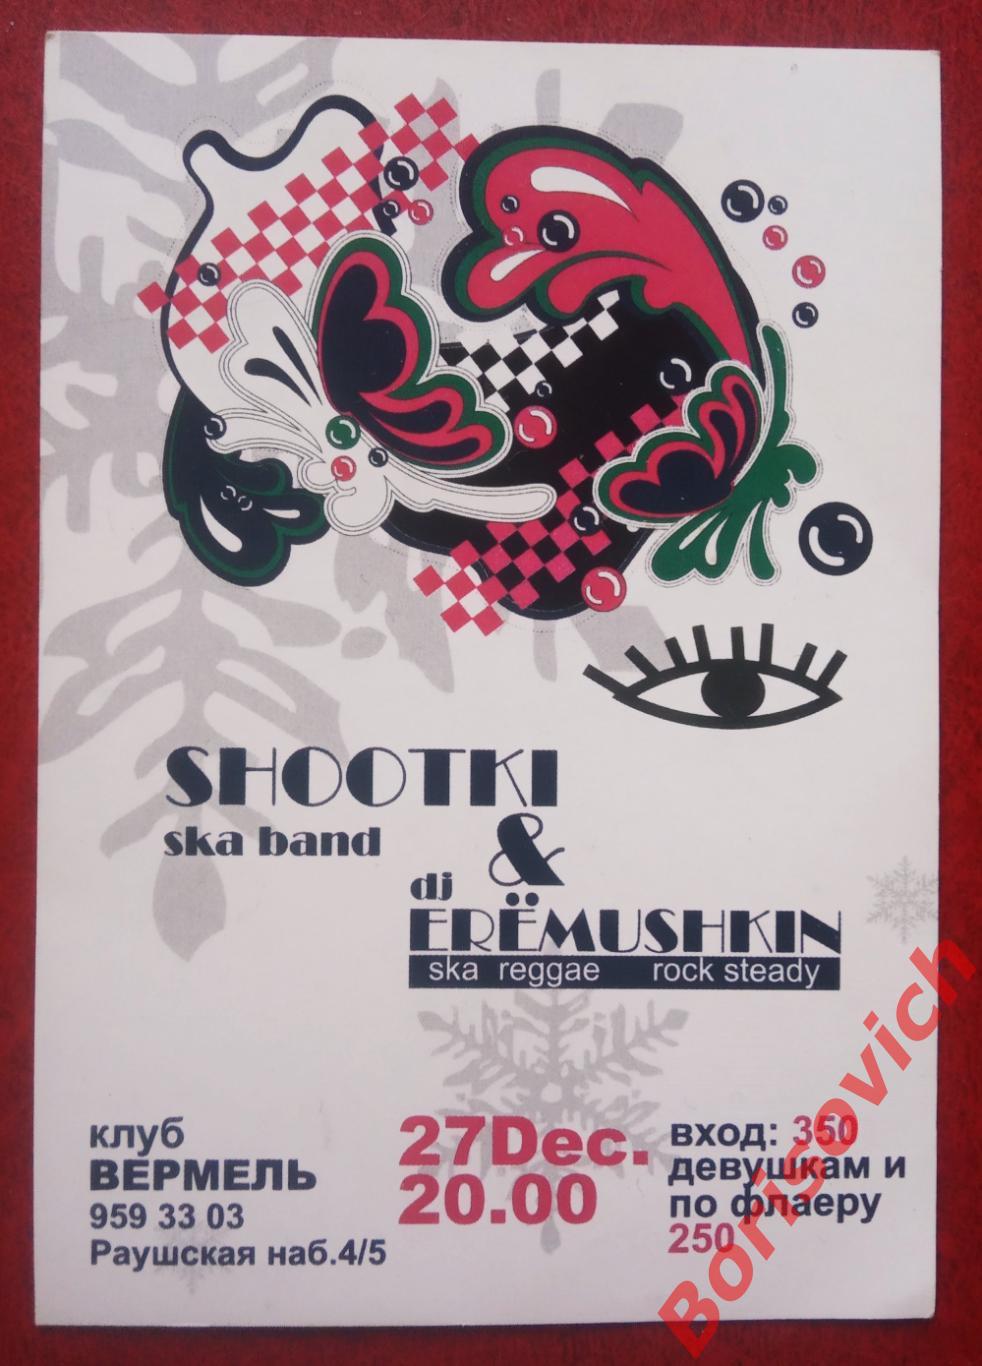 Флаер Клуб Вермель SHOOTKI & dj ERЁMUSHKIN 27-12-2006